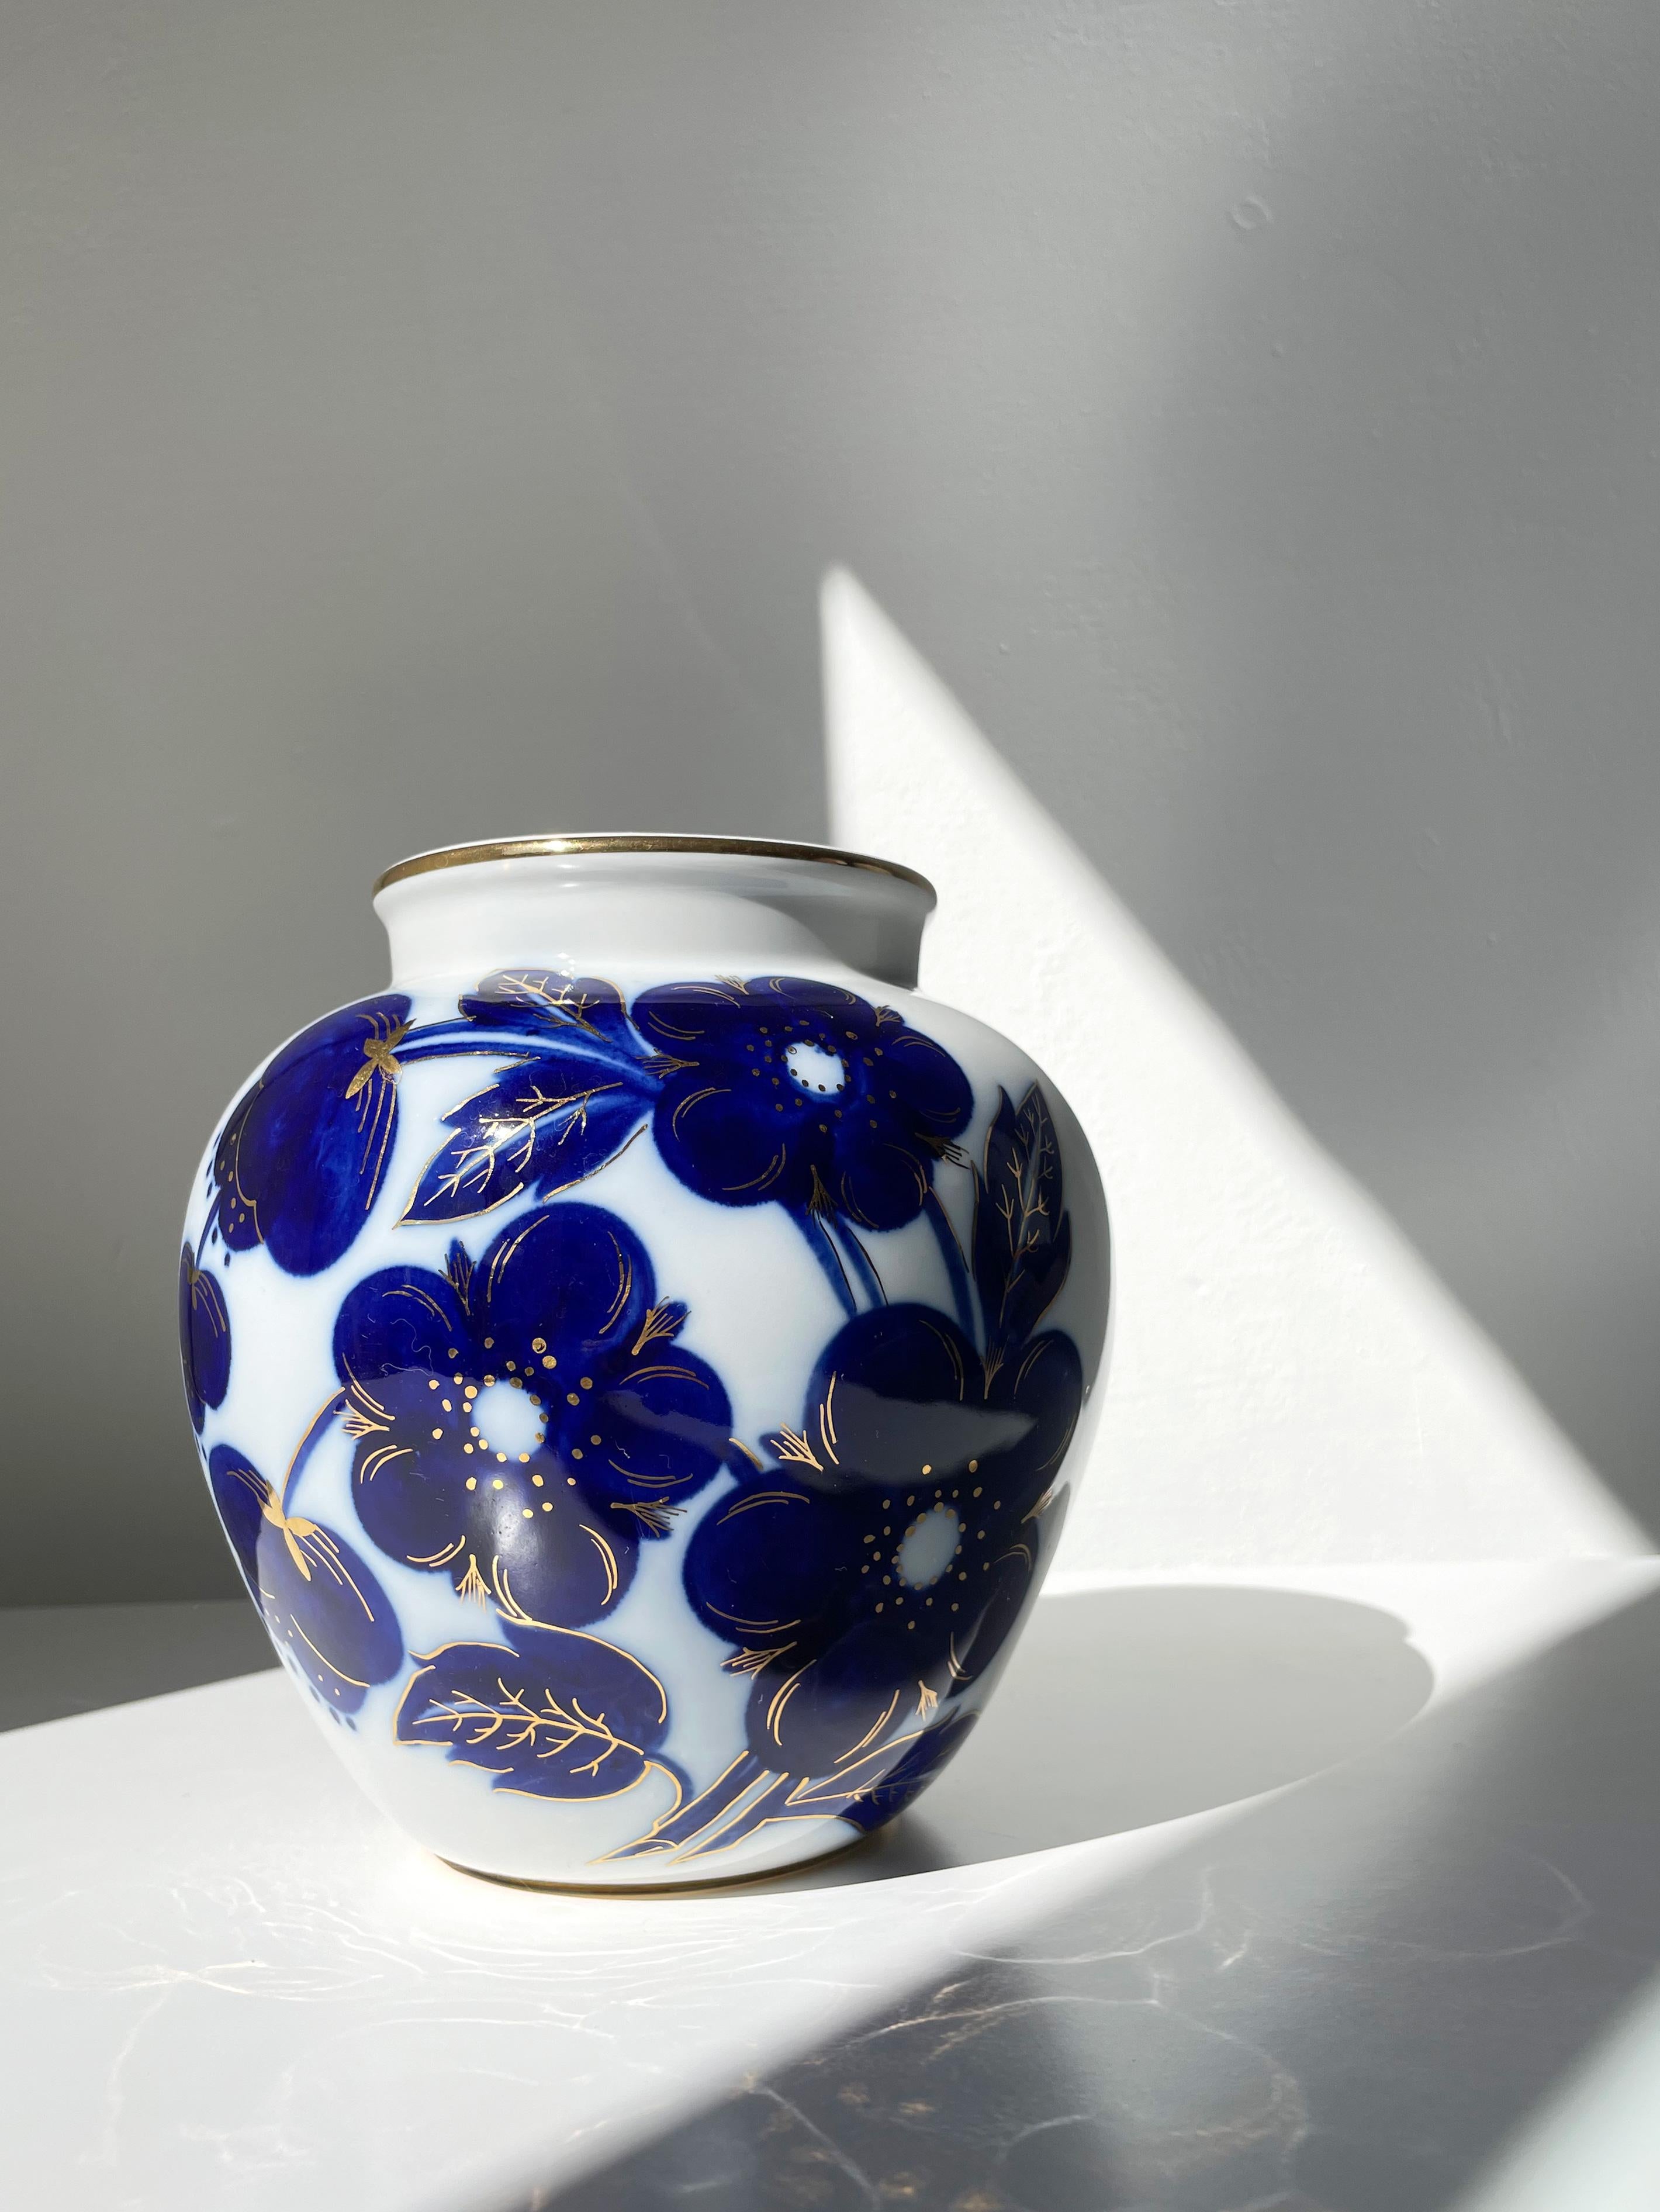 Russische Vase aus weißem Porzellan, die in den 1950er Jahren von der Porzellanfabrik Lomonossow (gegründet 1744) hergestellt wurde. Weich geformte organische Vase aus der Jahrhundertmitte, von Hand dekoriert mit großen kobaltblauen Mineralblumen,